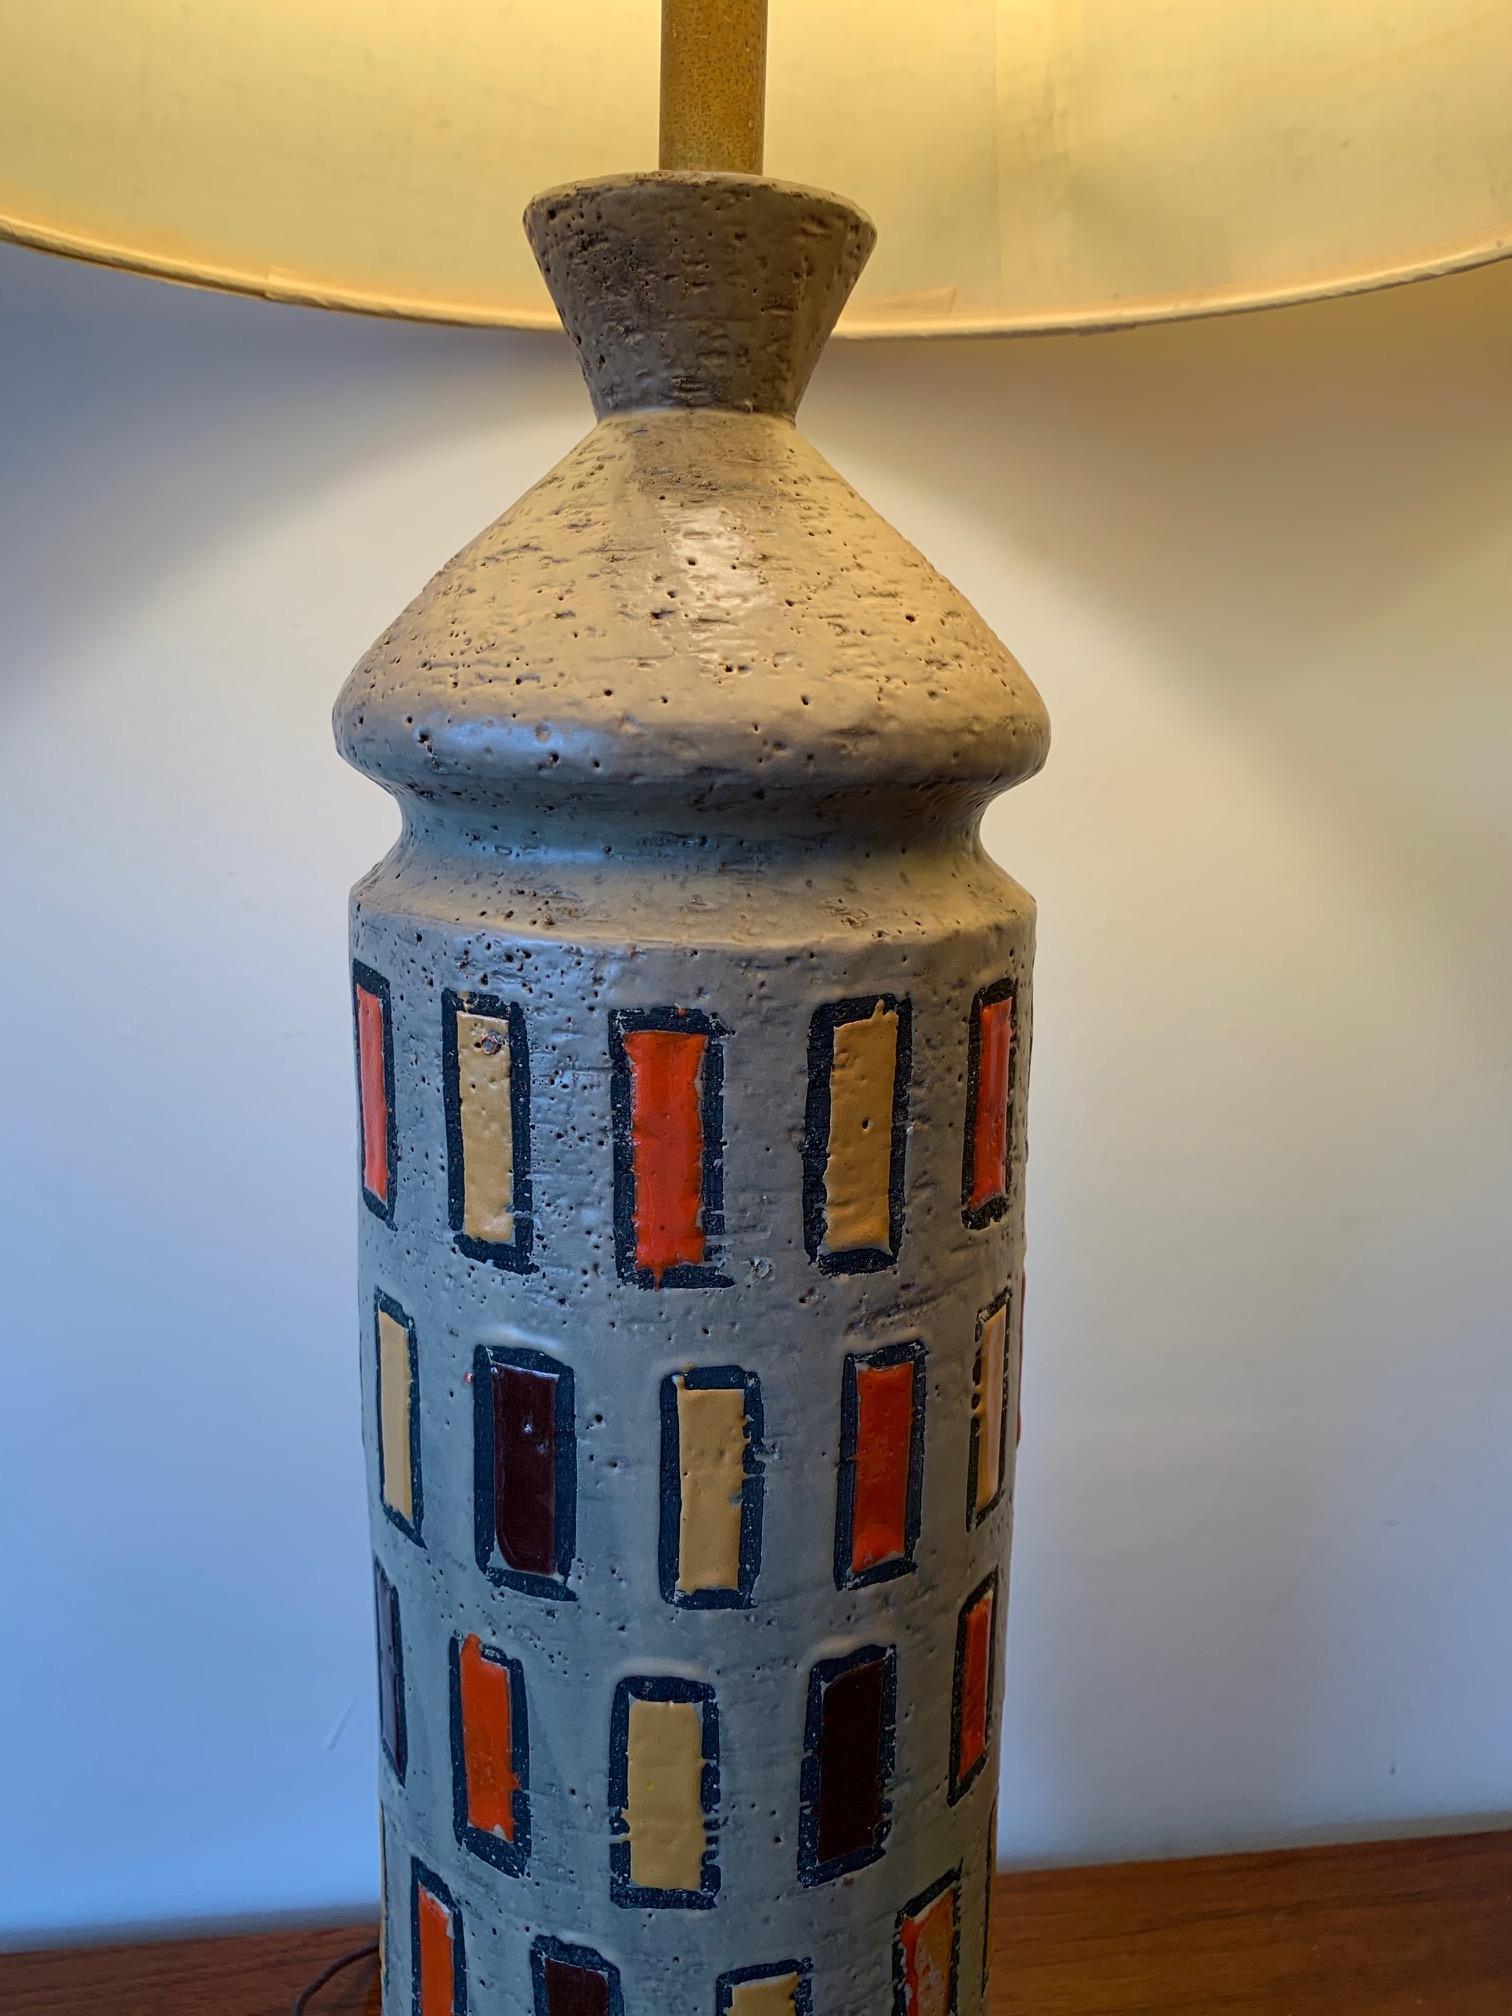 Une paire de lampes inhabituelles en céramique par Bitossi, Italie, vers les années 1960. Décoration fantaisiste, typique de la période, avec des rectangles audacieux de couleur jaune, orange et marron.